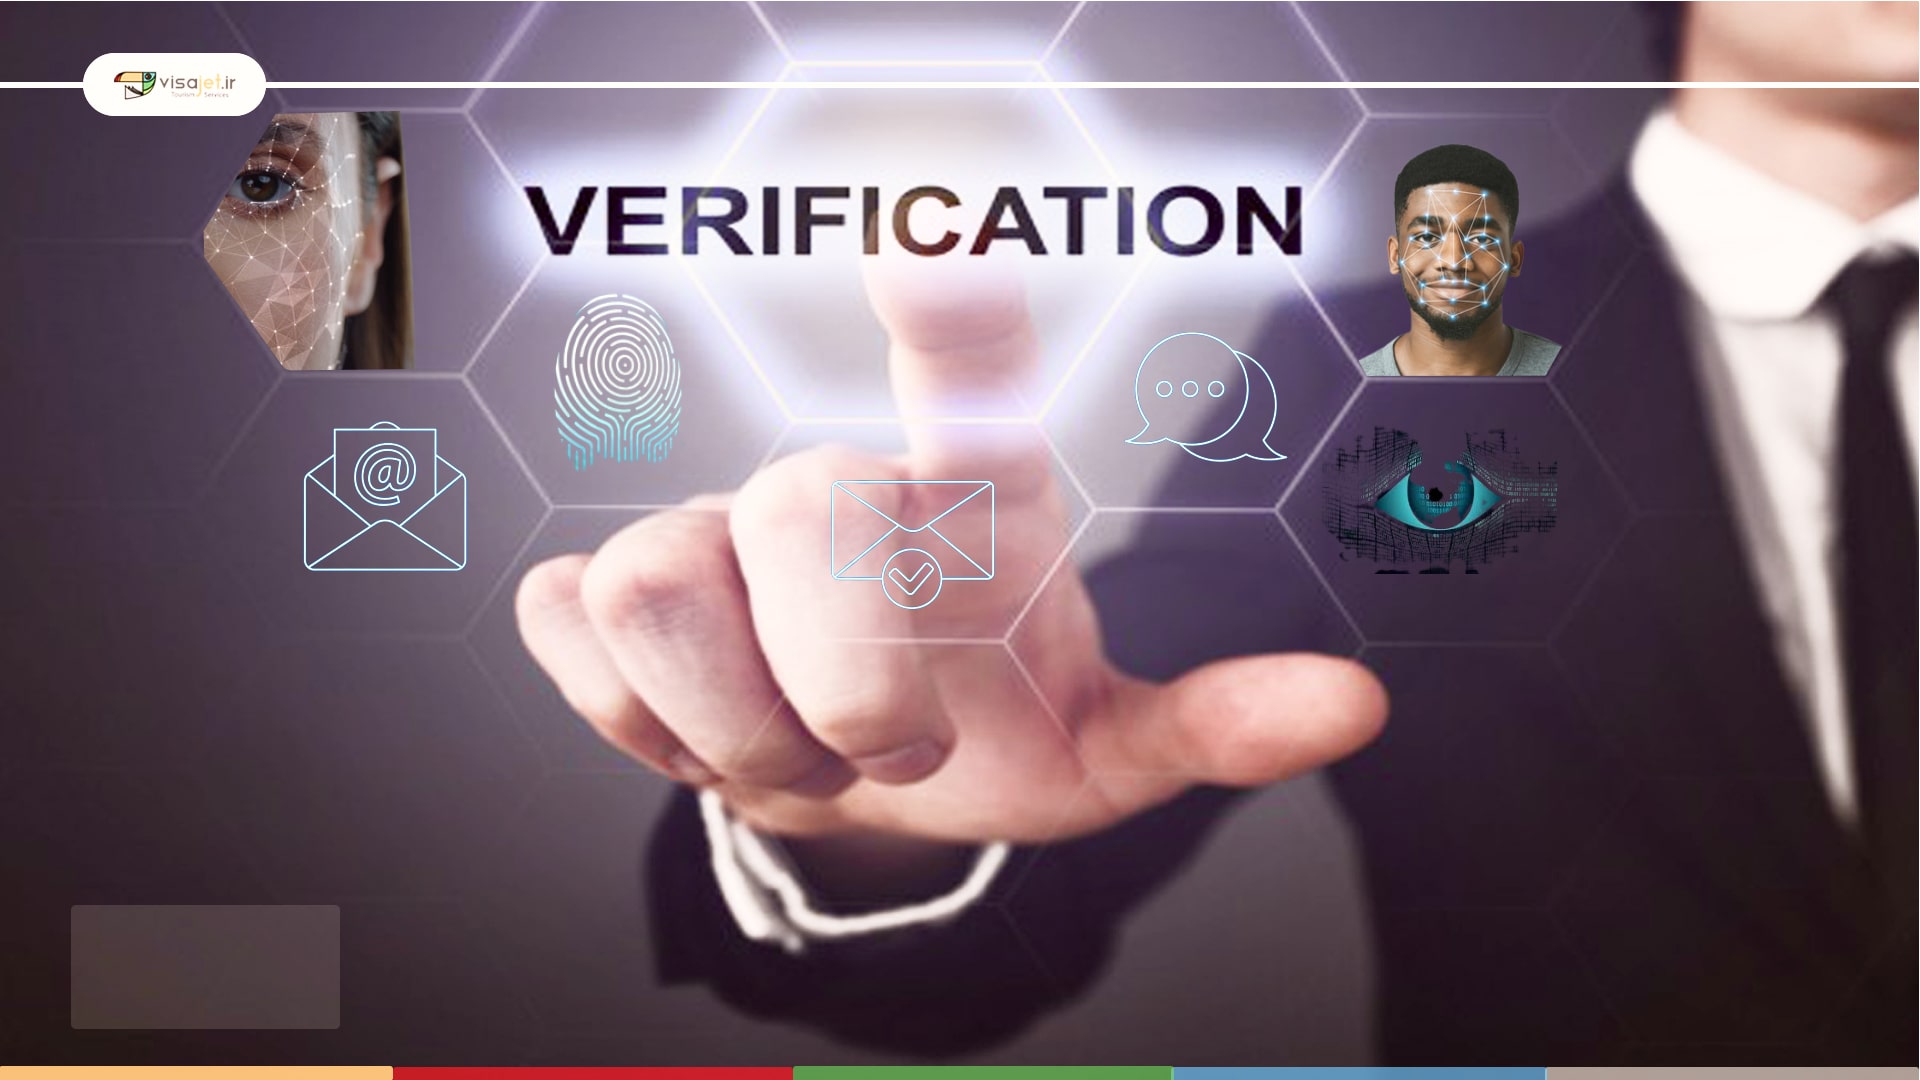 احراز هویت یا ثبت مشخصات بیومتریک چیست؟